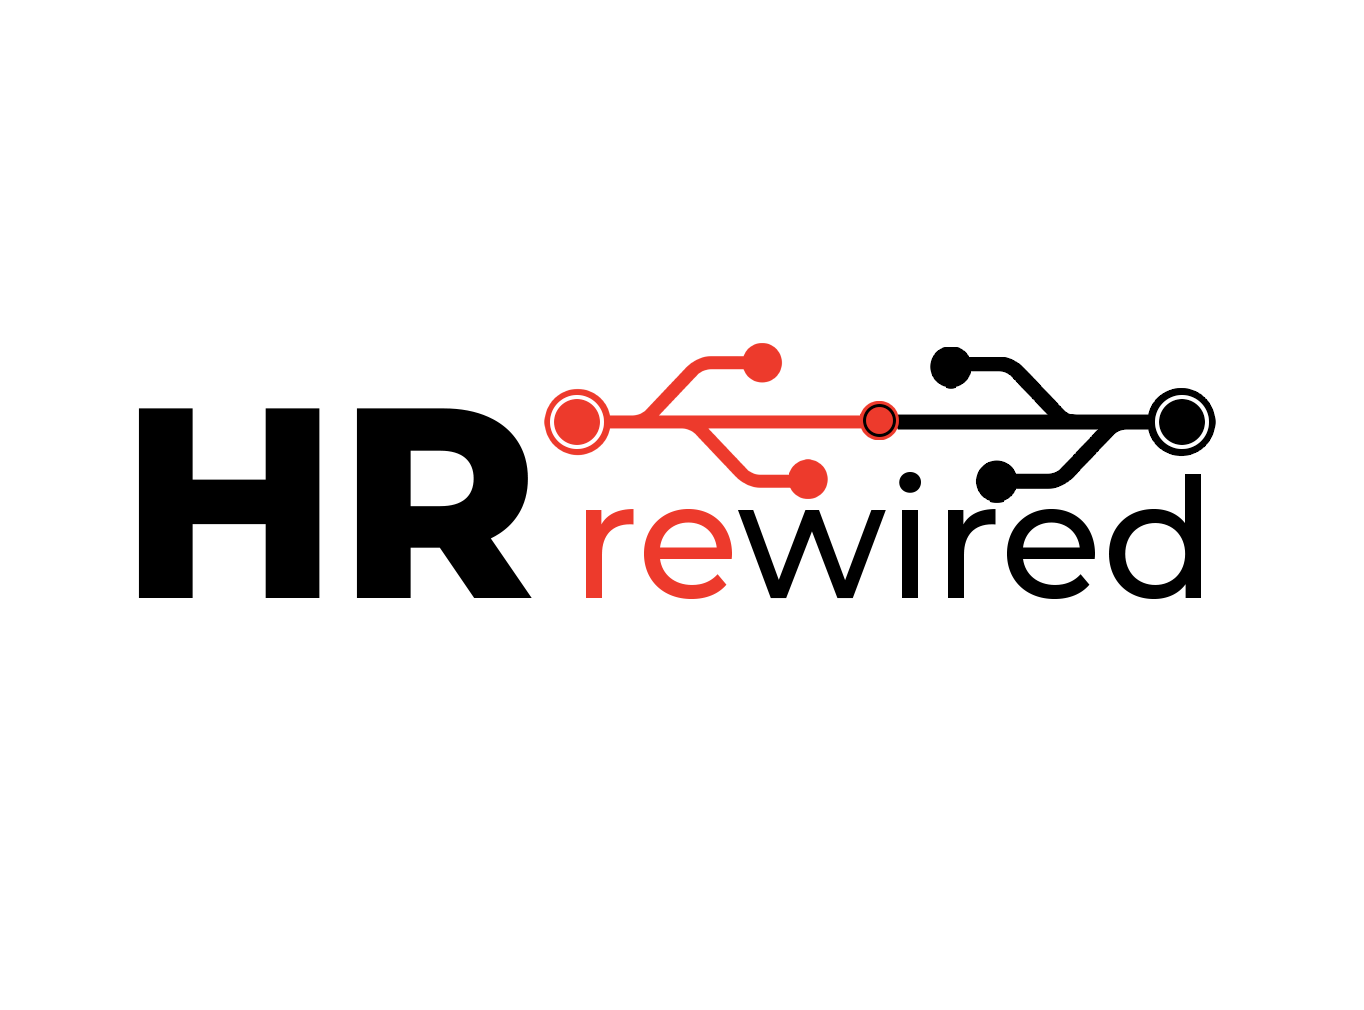 HR rewired